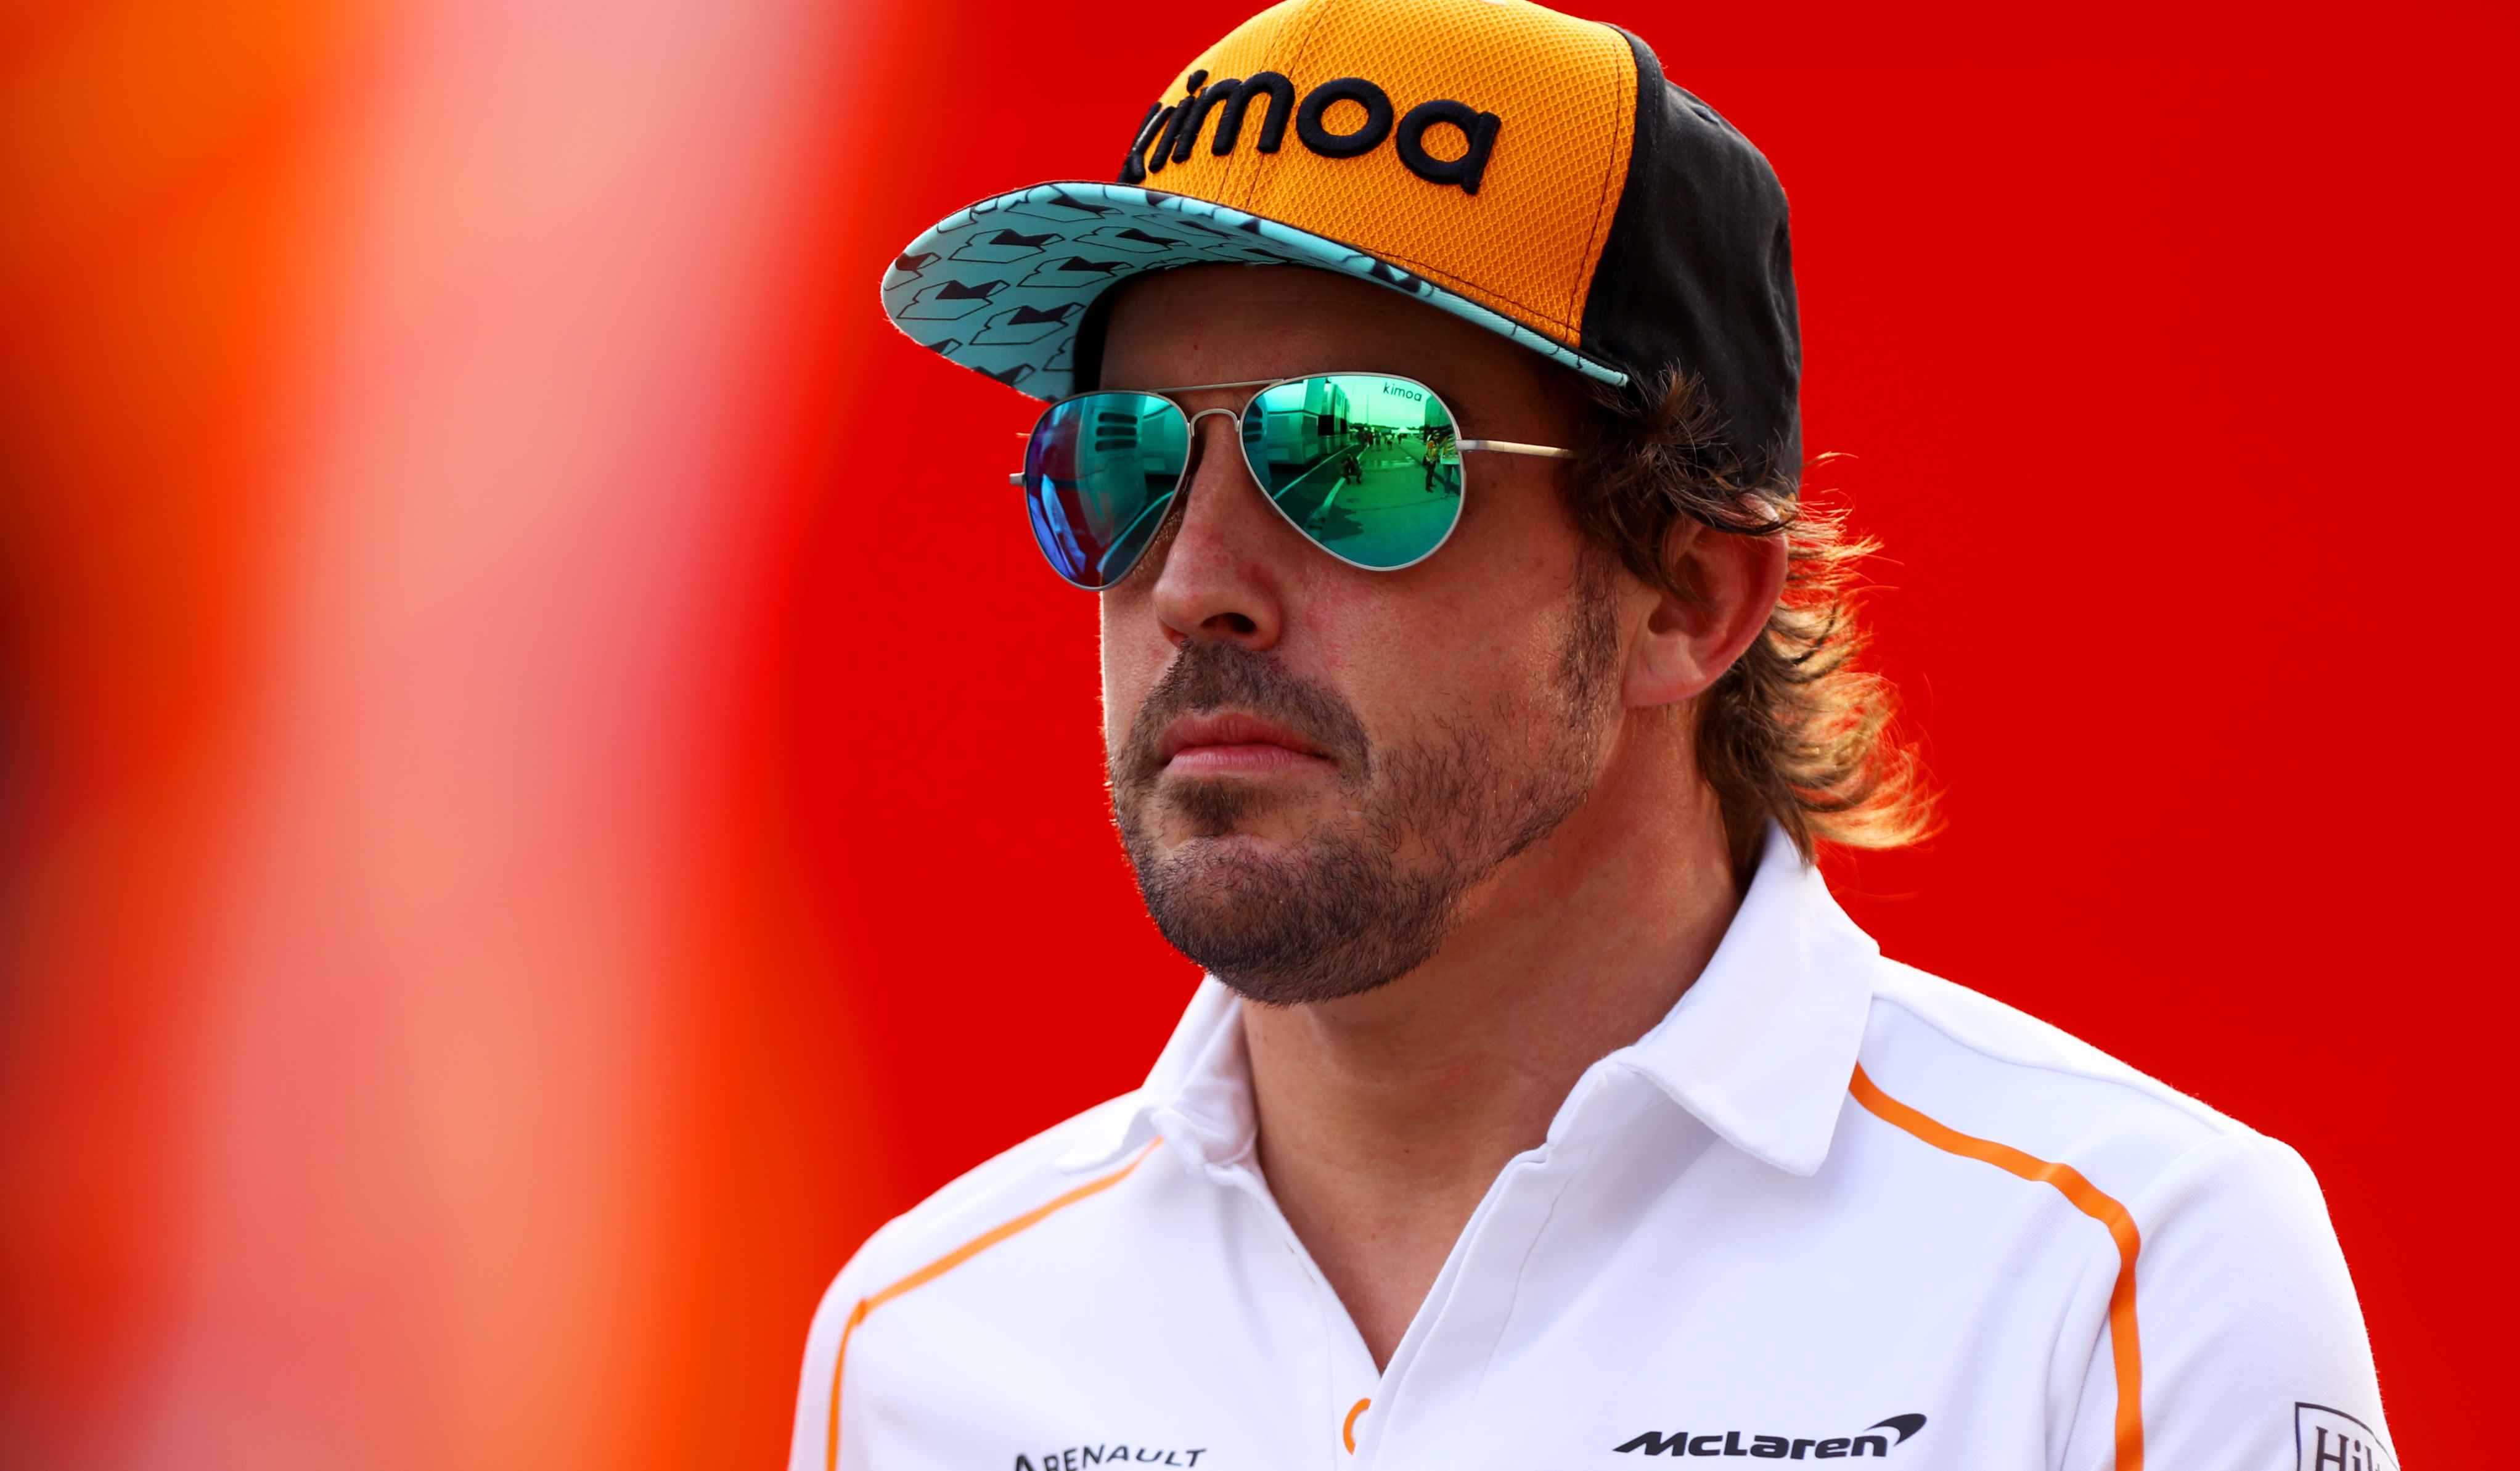 El Sumario - El asturiano se colocó nuevamente el uniforme de McLaren para participar en las pruebas de neumáticos Pirelli donde además estuvo Mick Schumacher con un tiempo prometedor